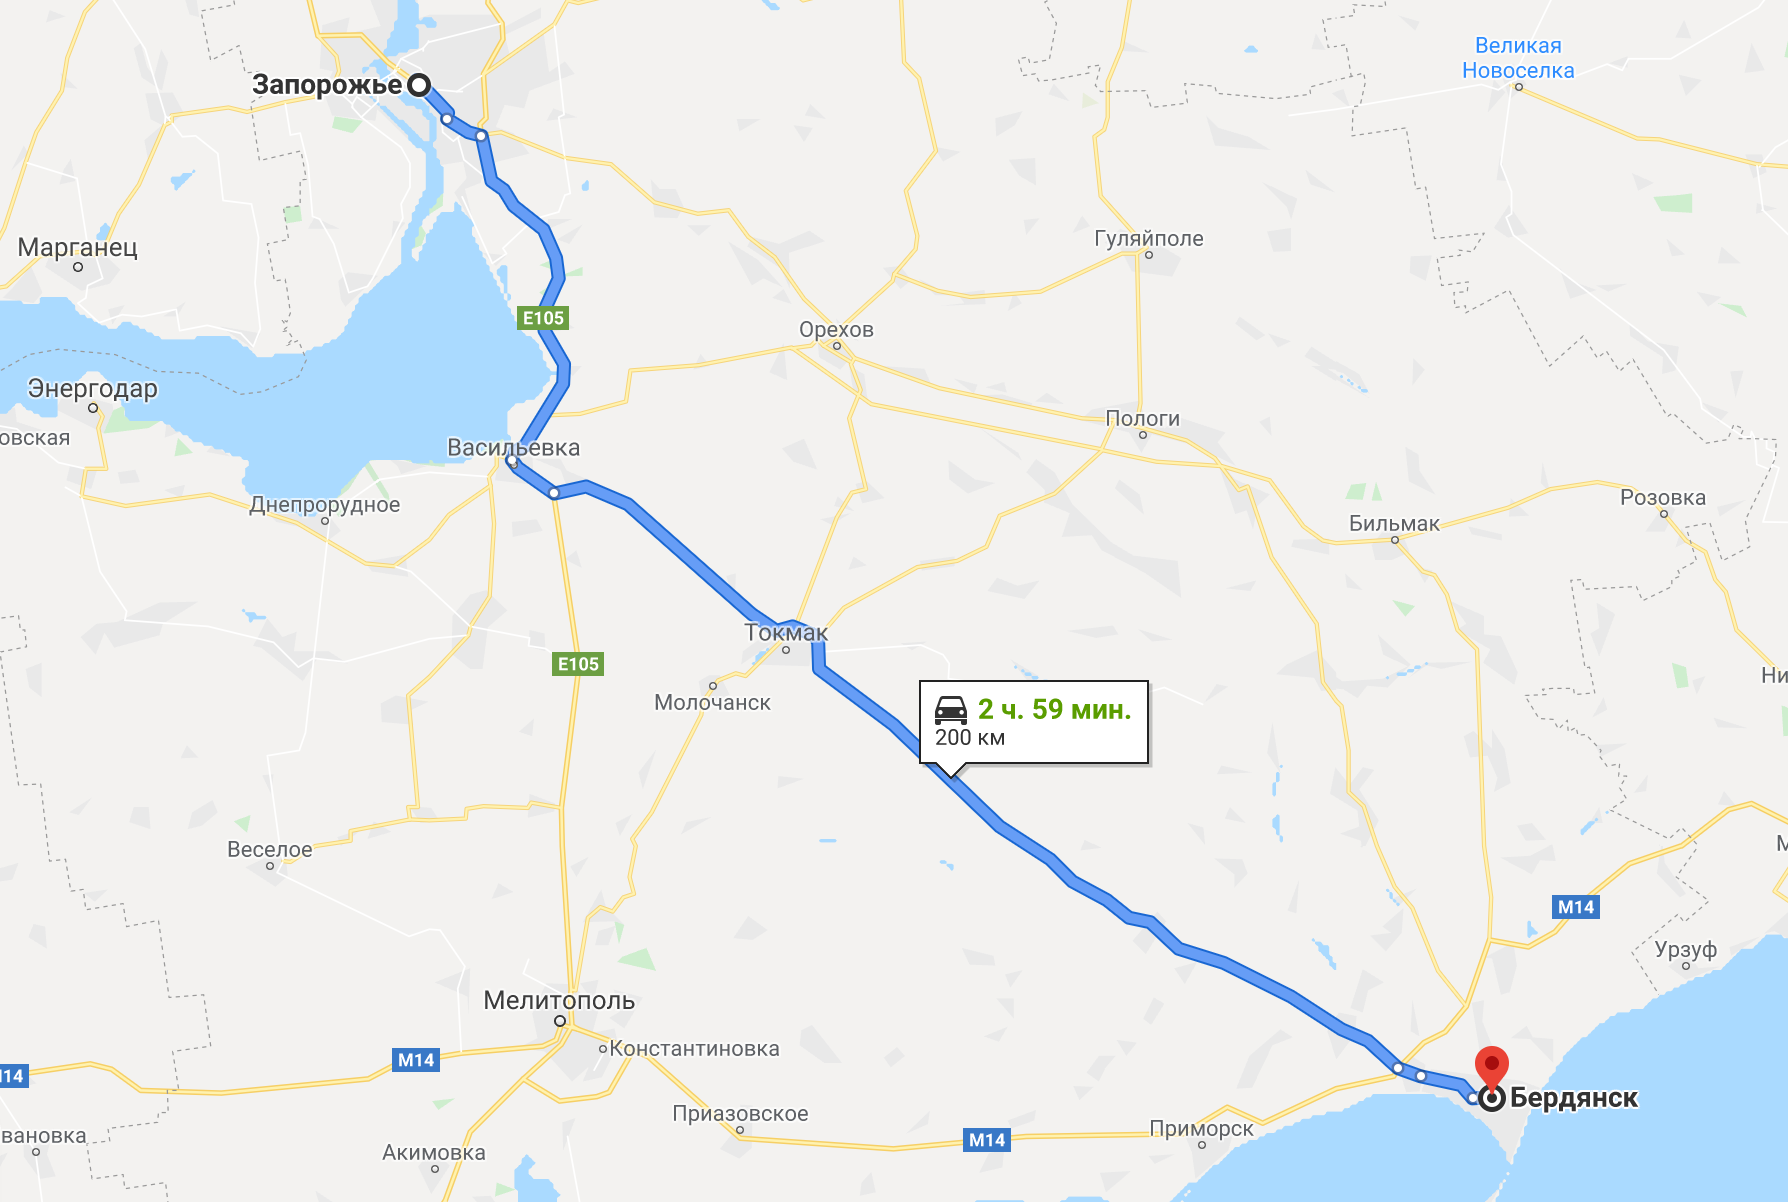 Как добраться до Бердянска на авто из Запорожья